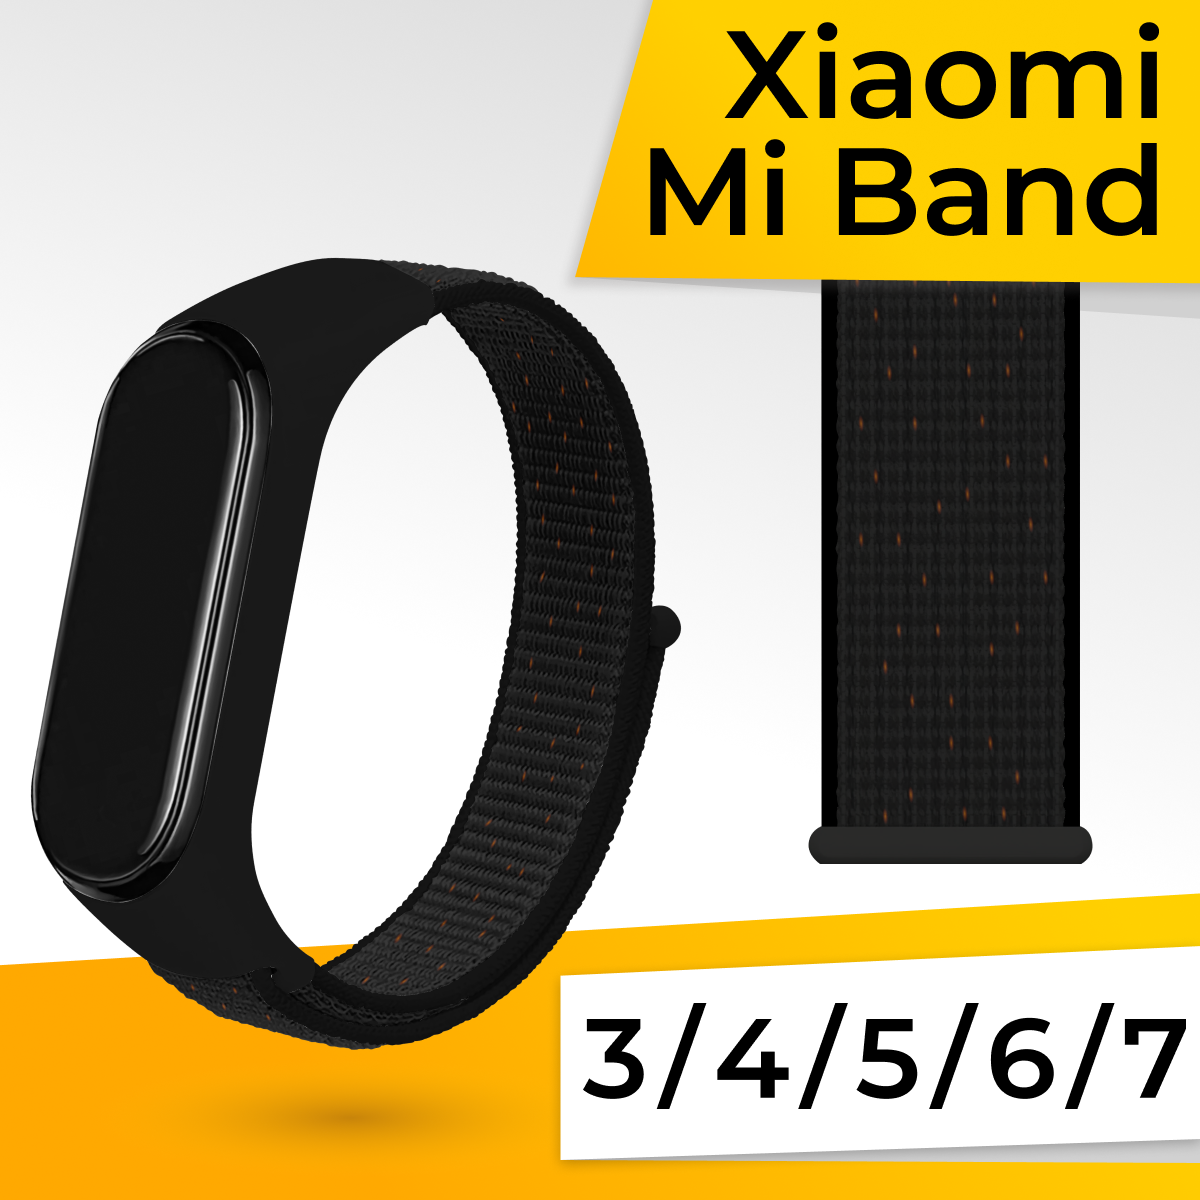 Нейлоновый ремешок для фитнес браслета Xiaomi Mi Band 3, 4, 5, 6, 7 / Спортивный тканевый браслет для смарт часов Сяоми Ми Бэнд 3-7 / Черно-оранжевый